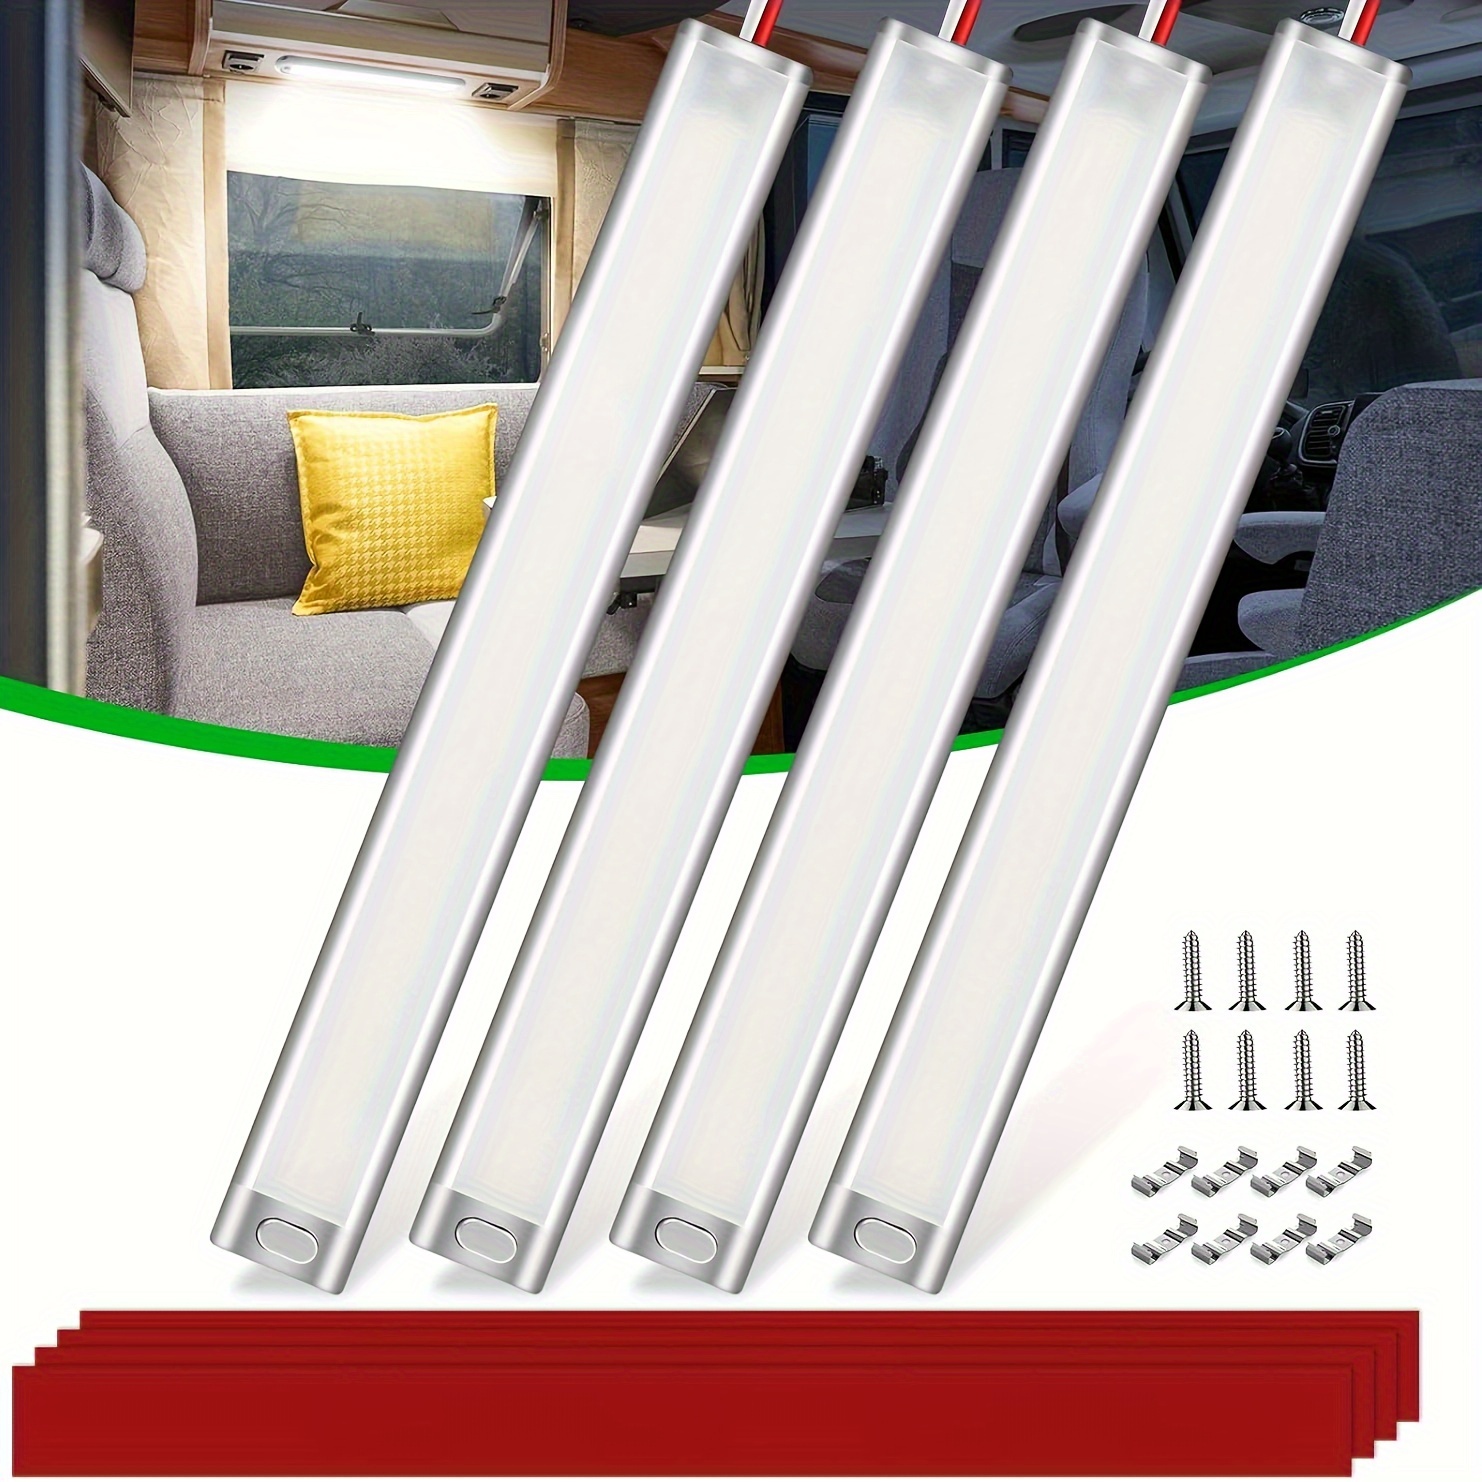 12v LED Interior Light Bar 120LEDs 1500LM 8W DC 12 Volt Led Strip Lights  With ON/Off Switch, For Enclosed Cargo Trailer, Car RV Van Truck (1pack)